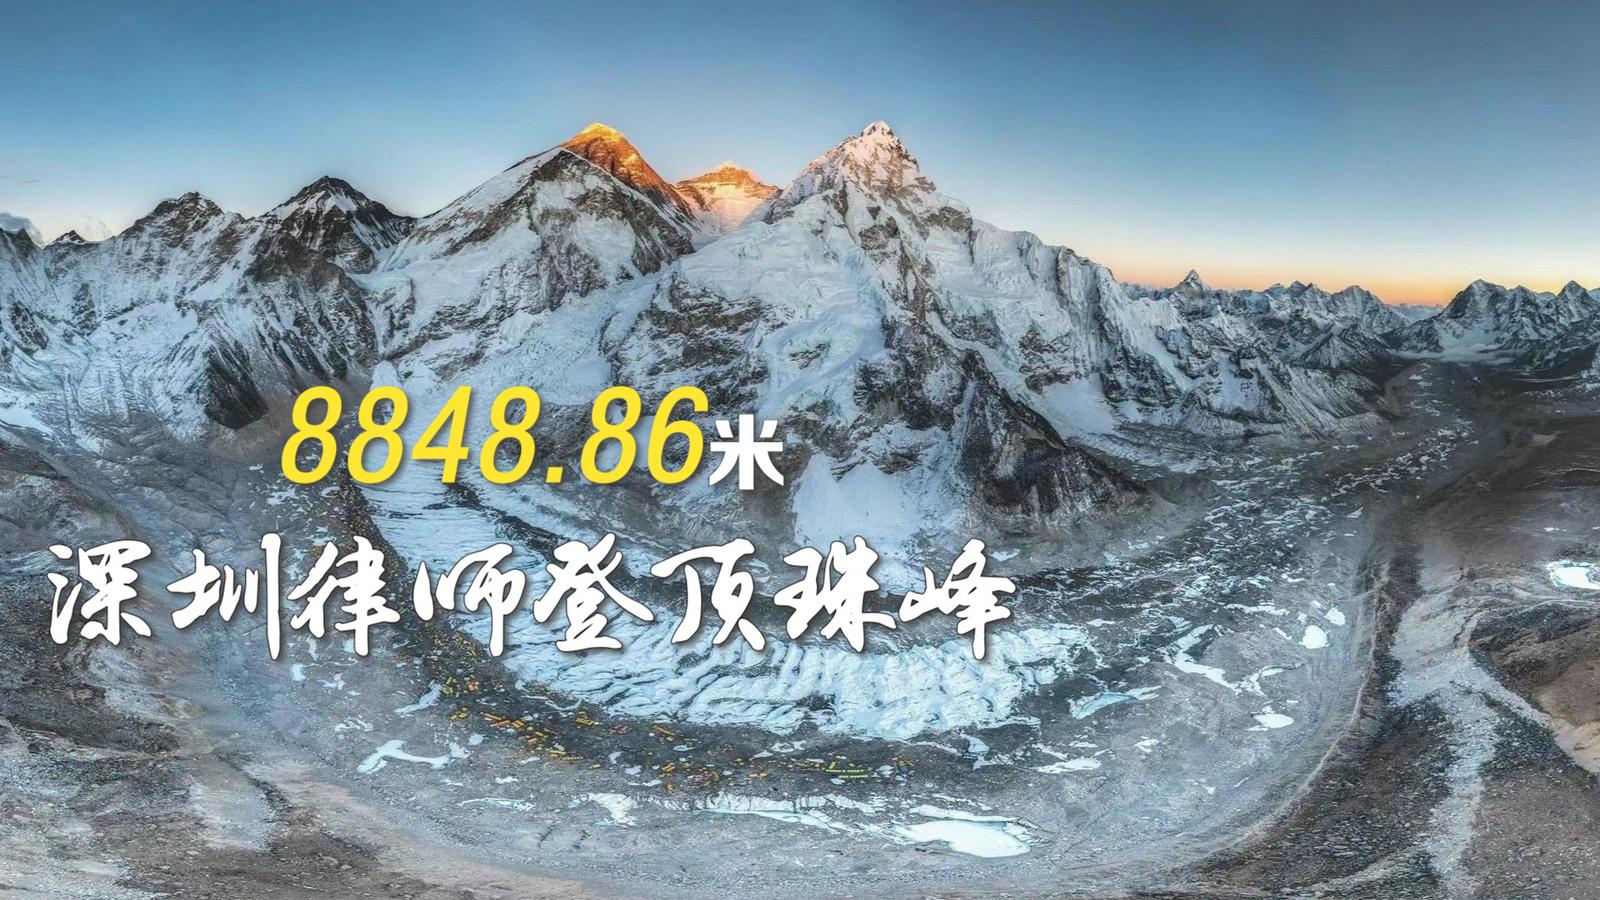 IN视频|8848.86米！深圳律师陈国庆登顶珠穆朗玛峰